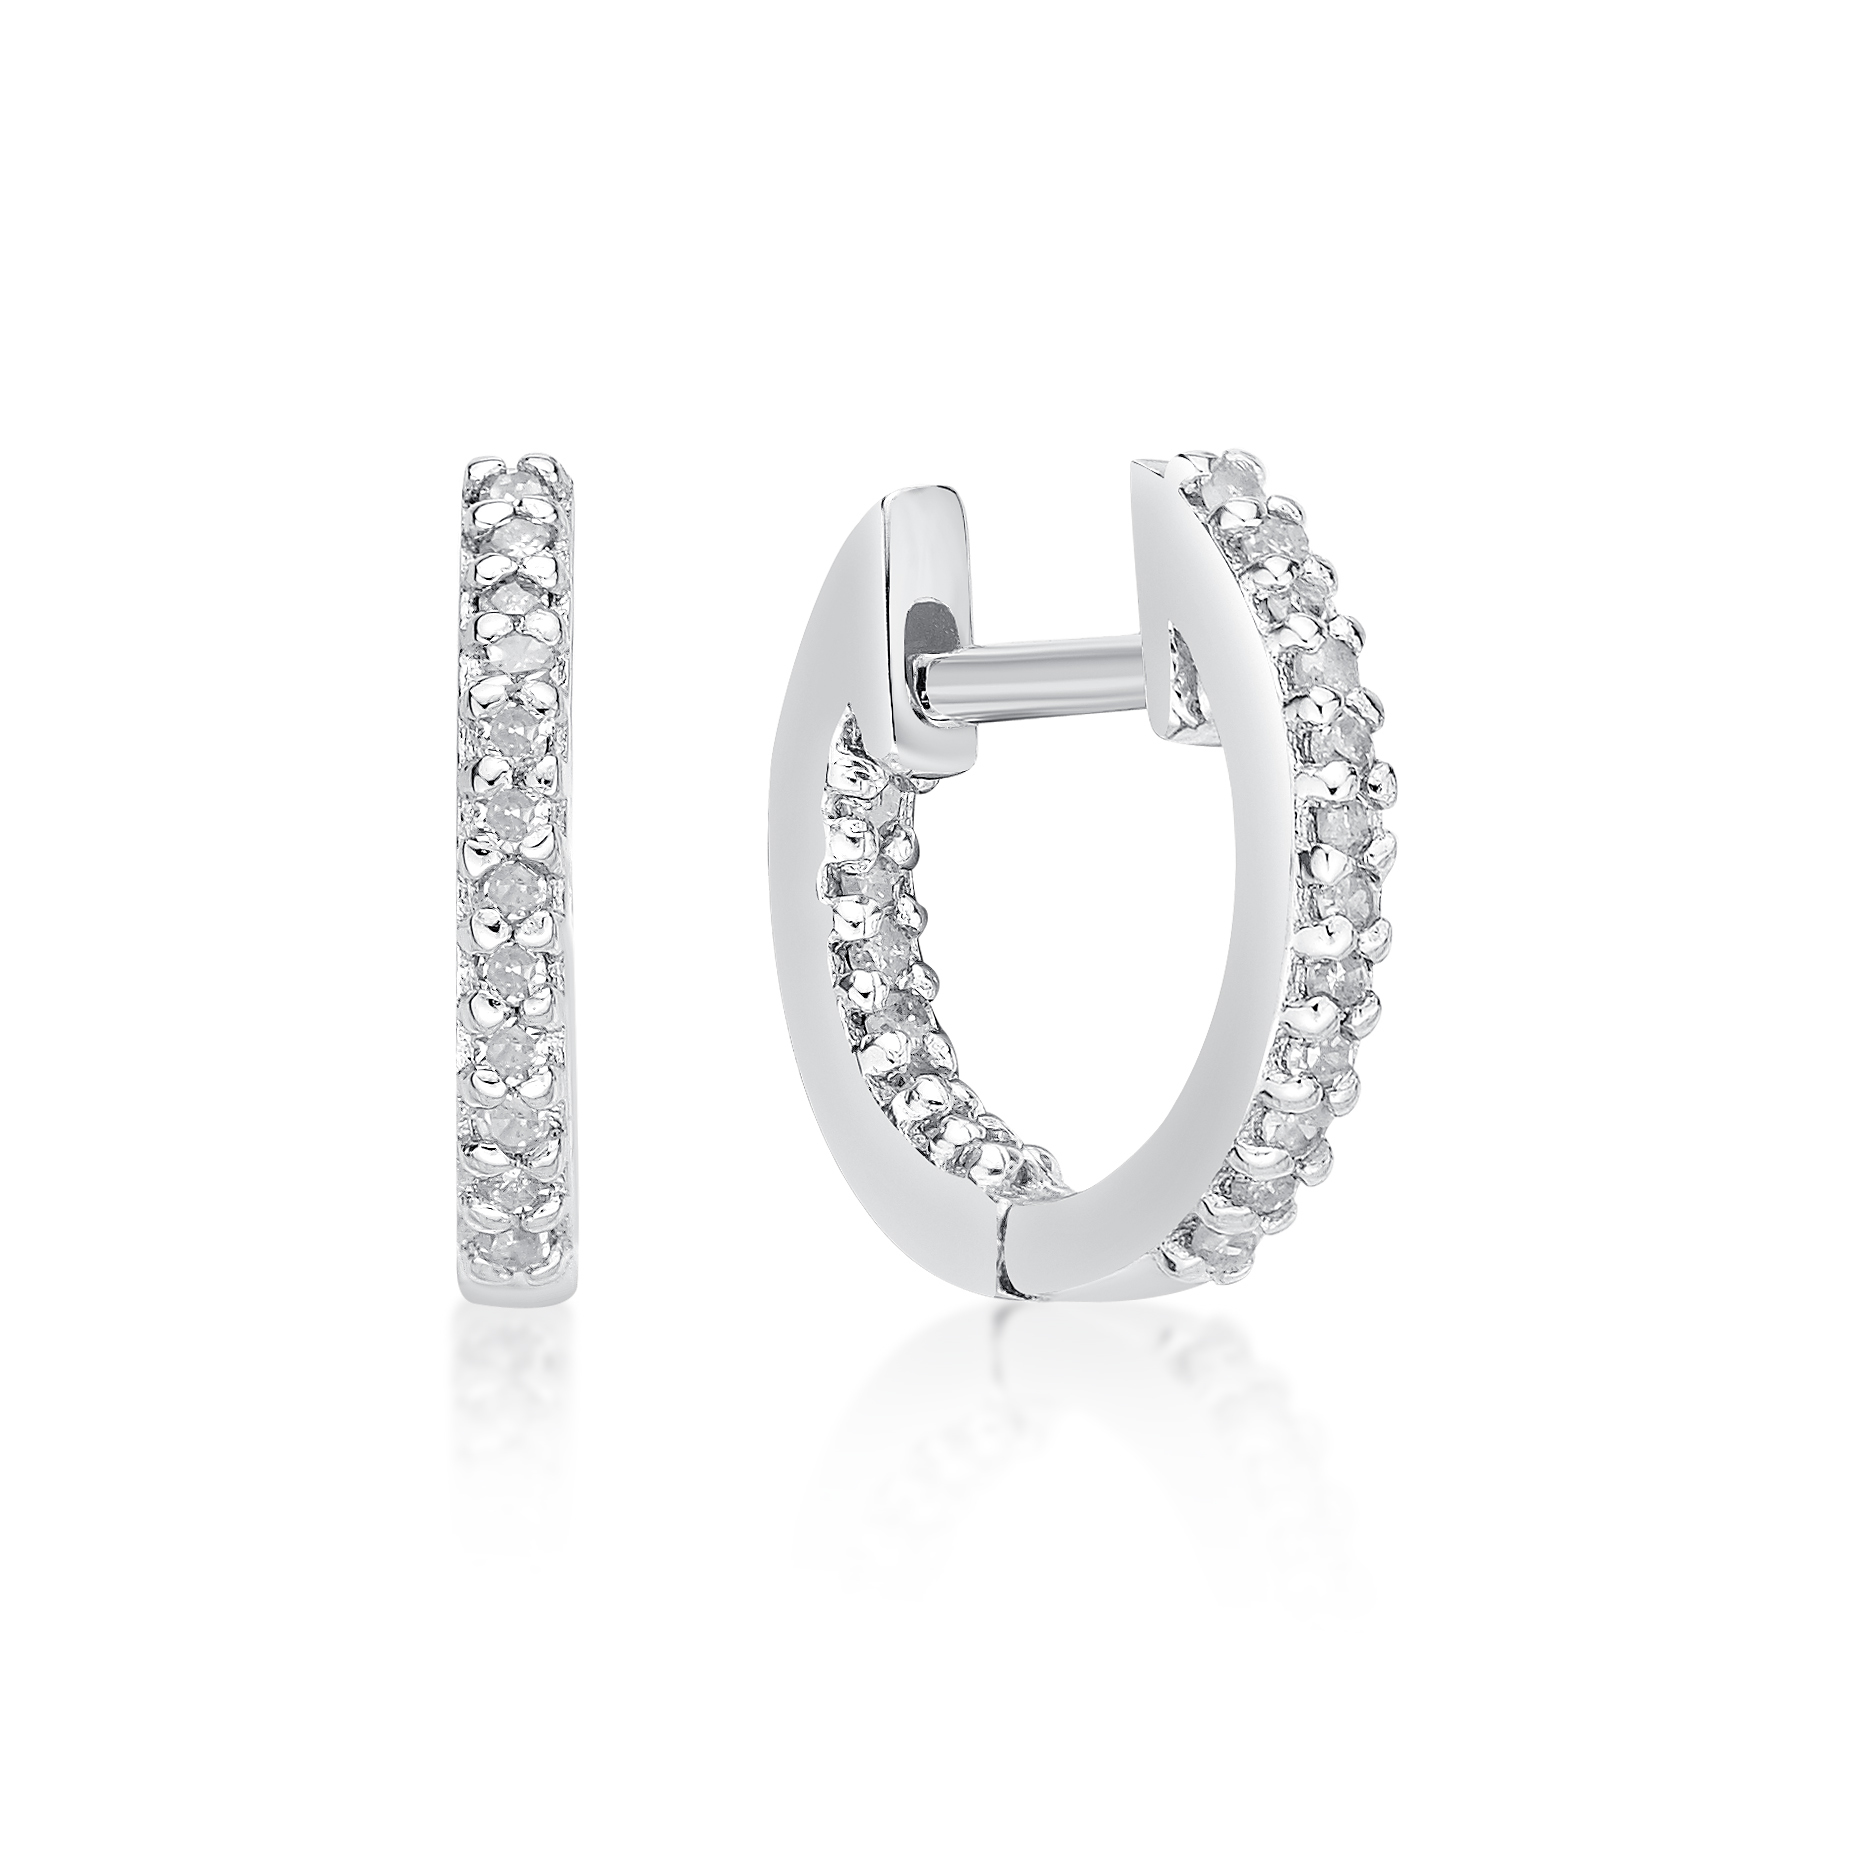 49067-earrings-fashion-diamond-sterling-silver-49067.jpg